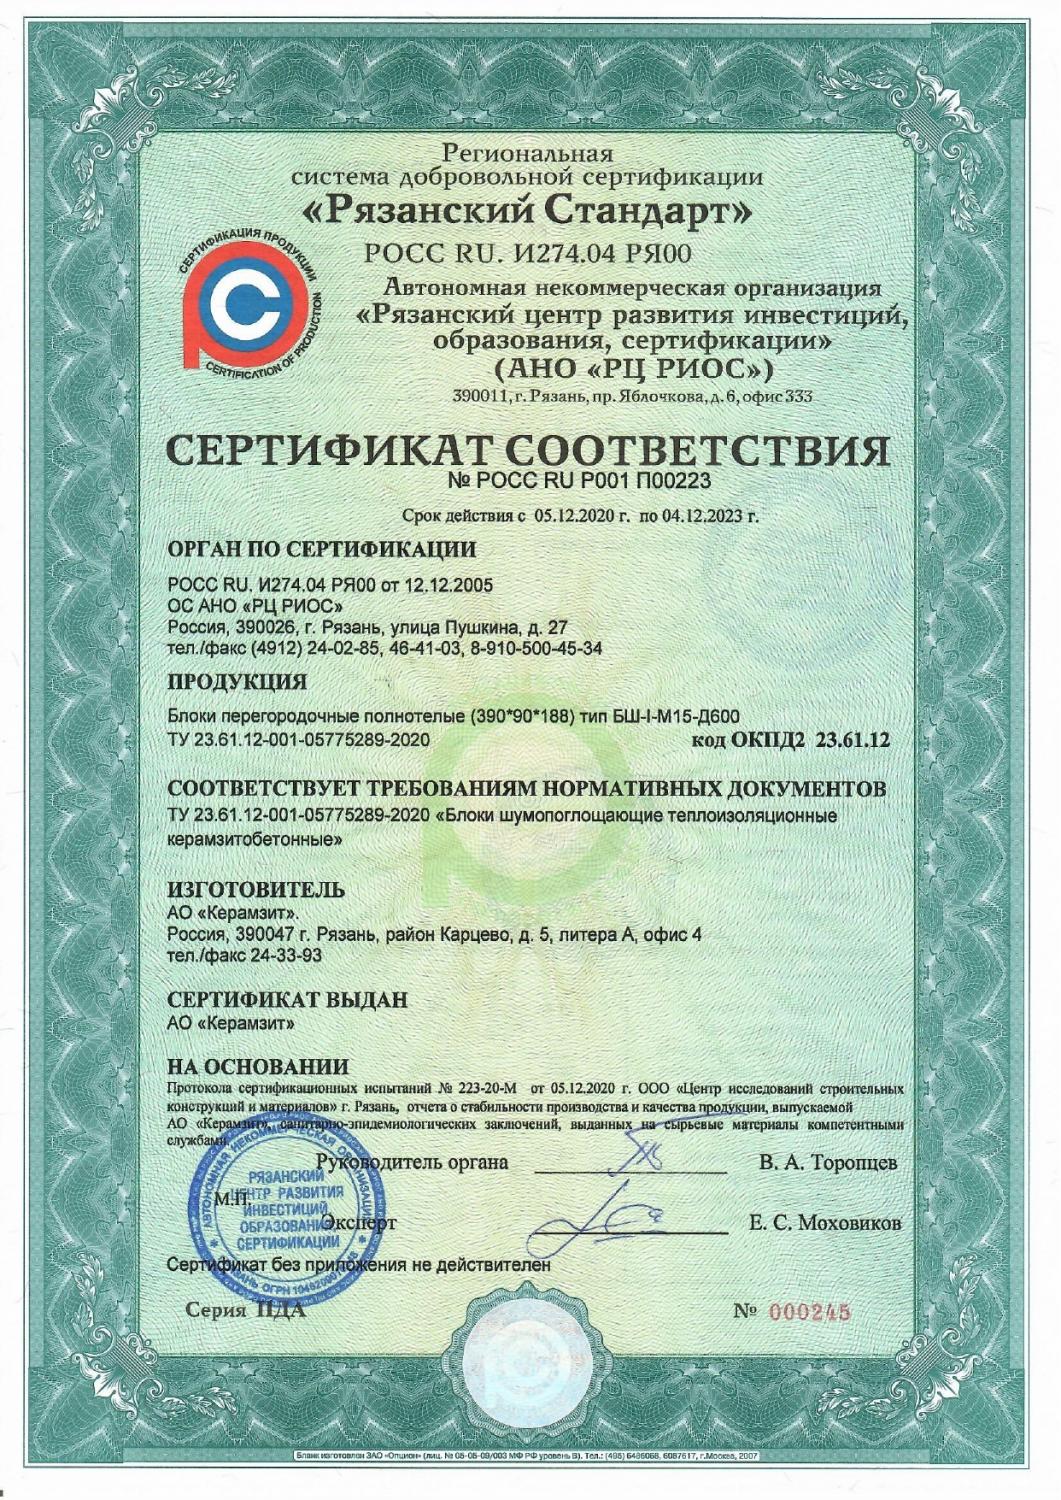 Сертификат соответствия перегородочных блоков "Термоплюс®" 390х90х188 плотностью 600 кг/м³